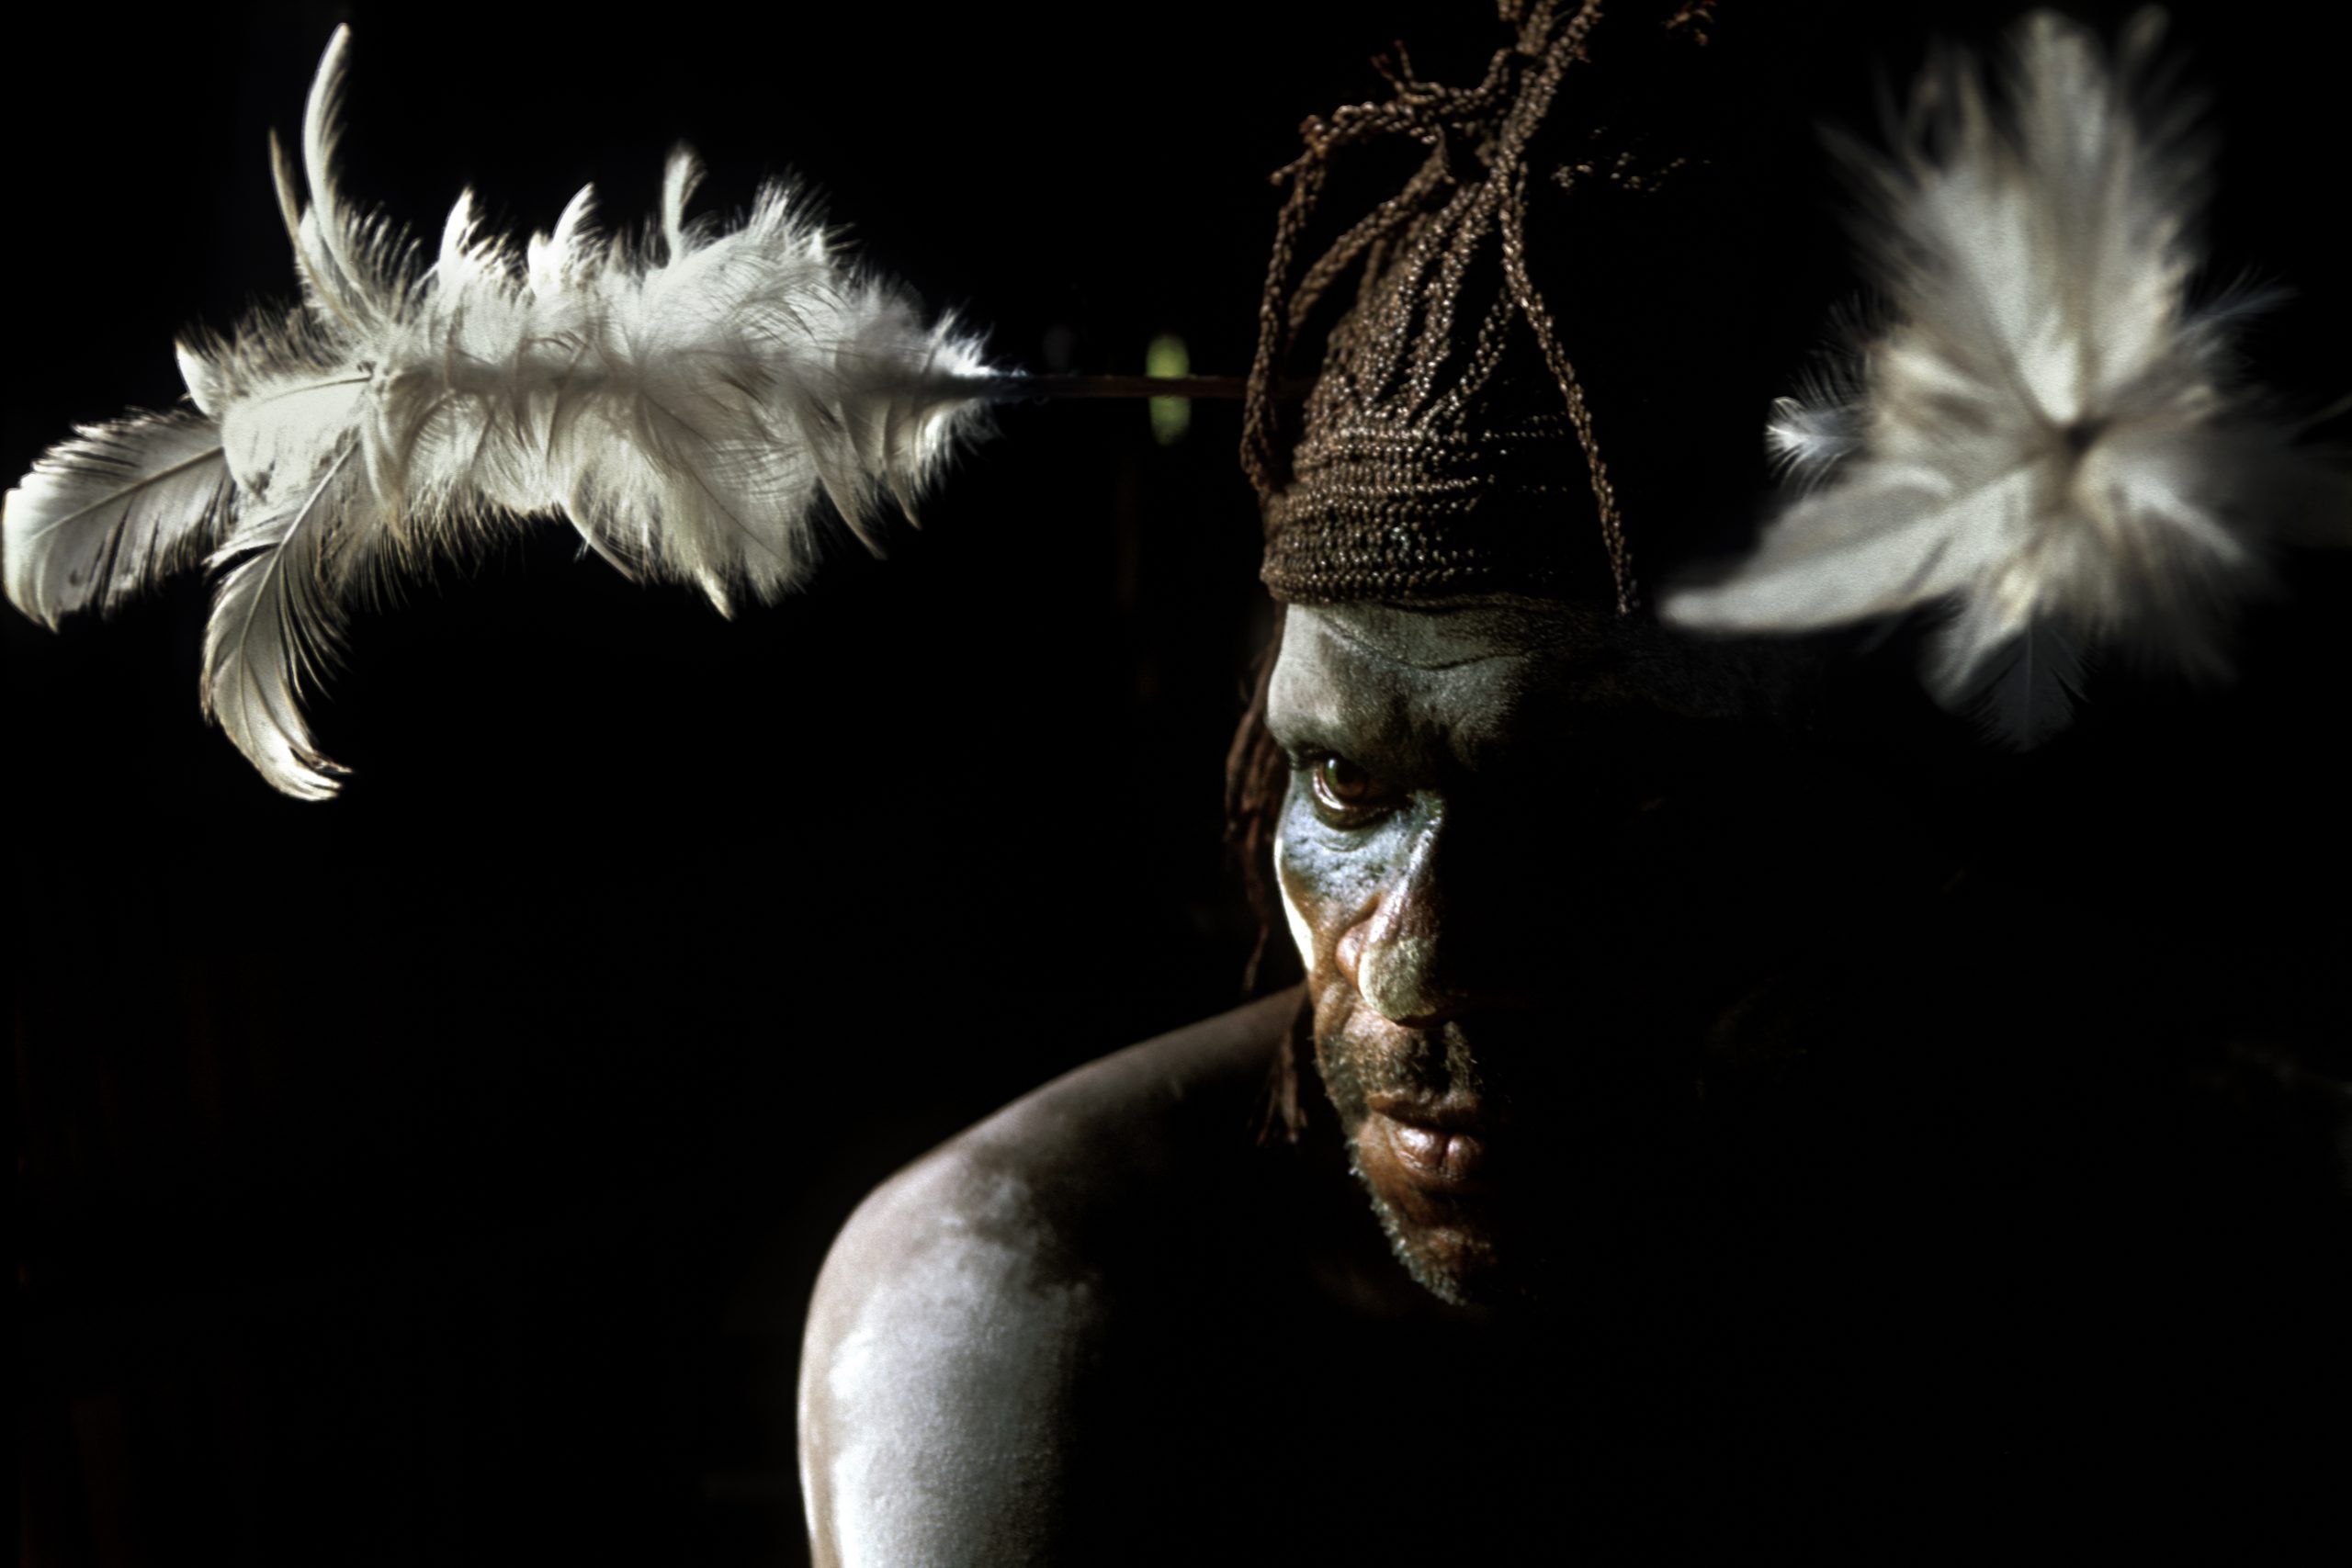 Regione di Asmat - West Papua - acconciatura con piume di cacatua per un Asmat del villaggio di Paw. La regione in cui vivono gli Asmat è una foresta pluviale che si trova in gran parte al di sotto del livello del mare e tutti i villaggi sono costruiti su palafitte.©Bruno Zanzottera